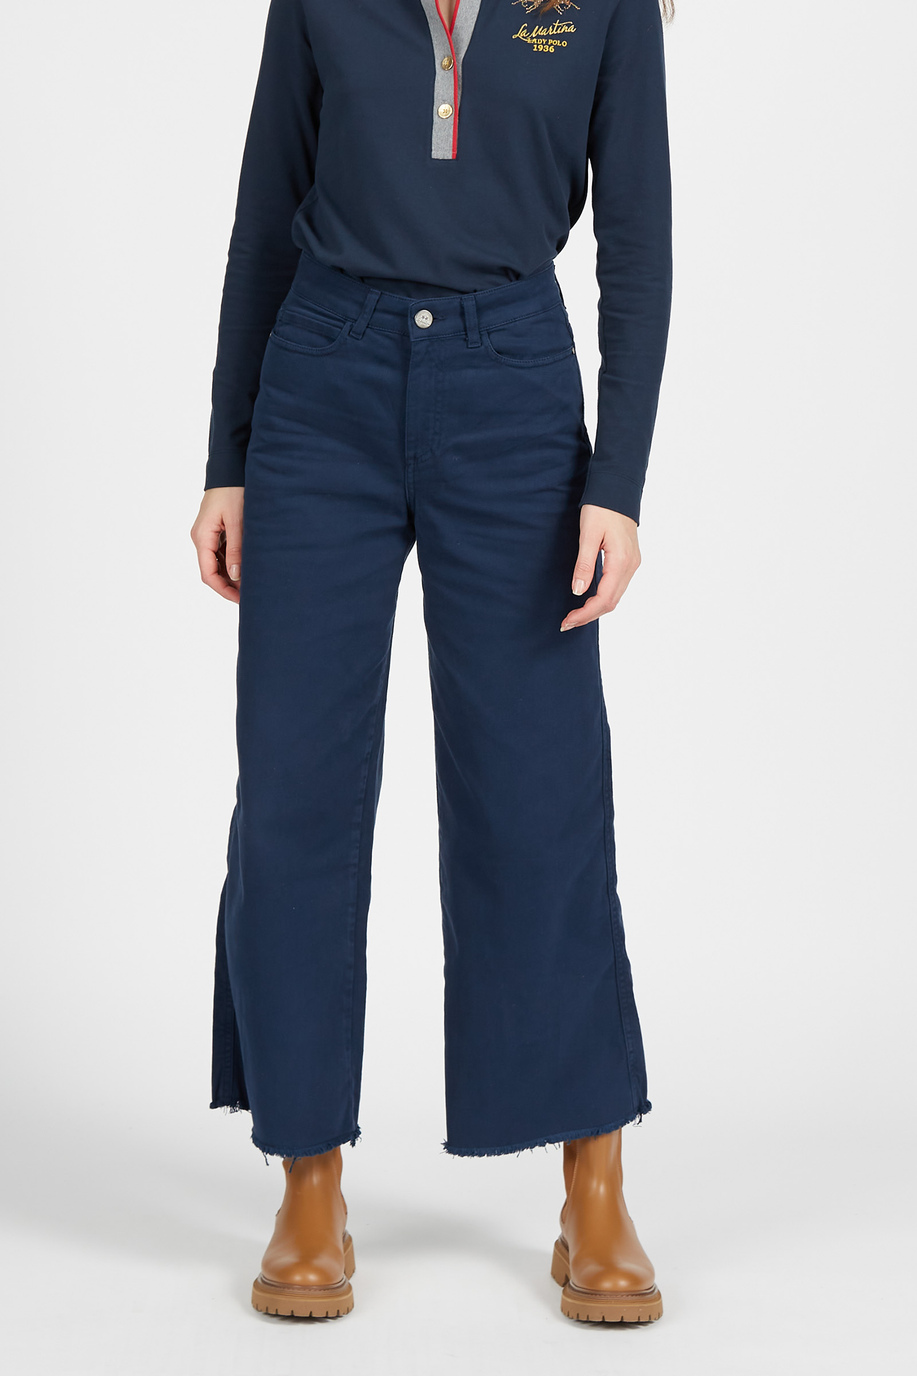 Pantalone largo da donna a vita alta in cotone elasticizzato regular fit - Preview | La Martina - Official Online Shop